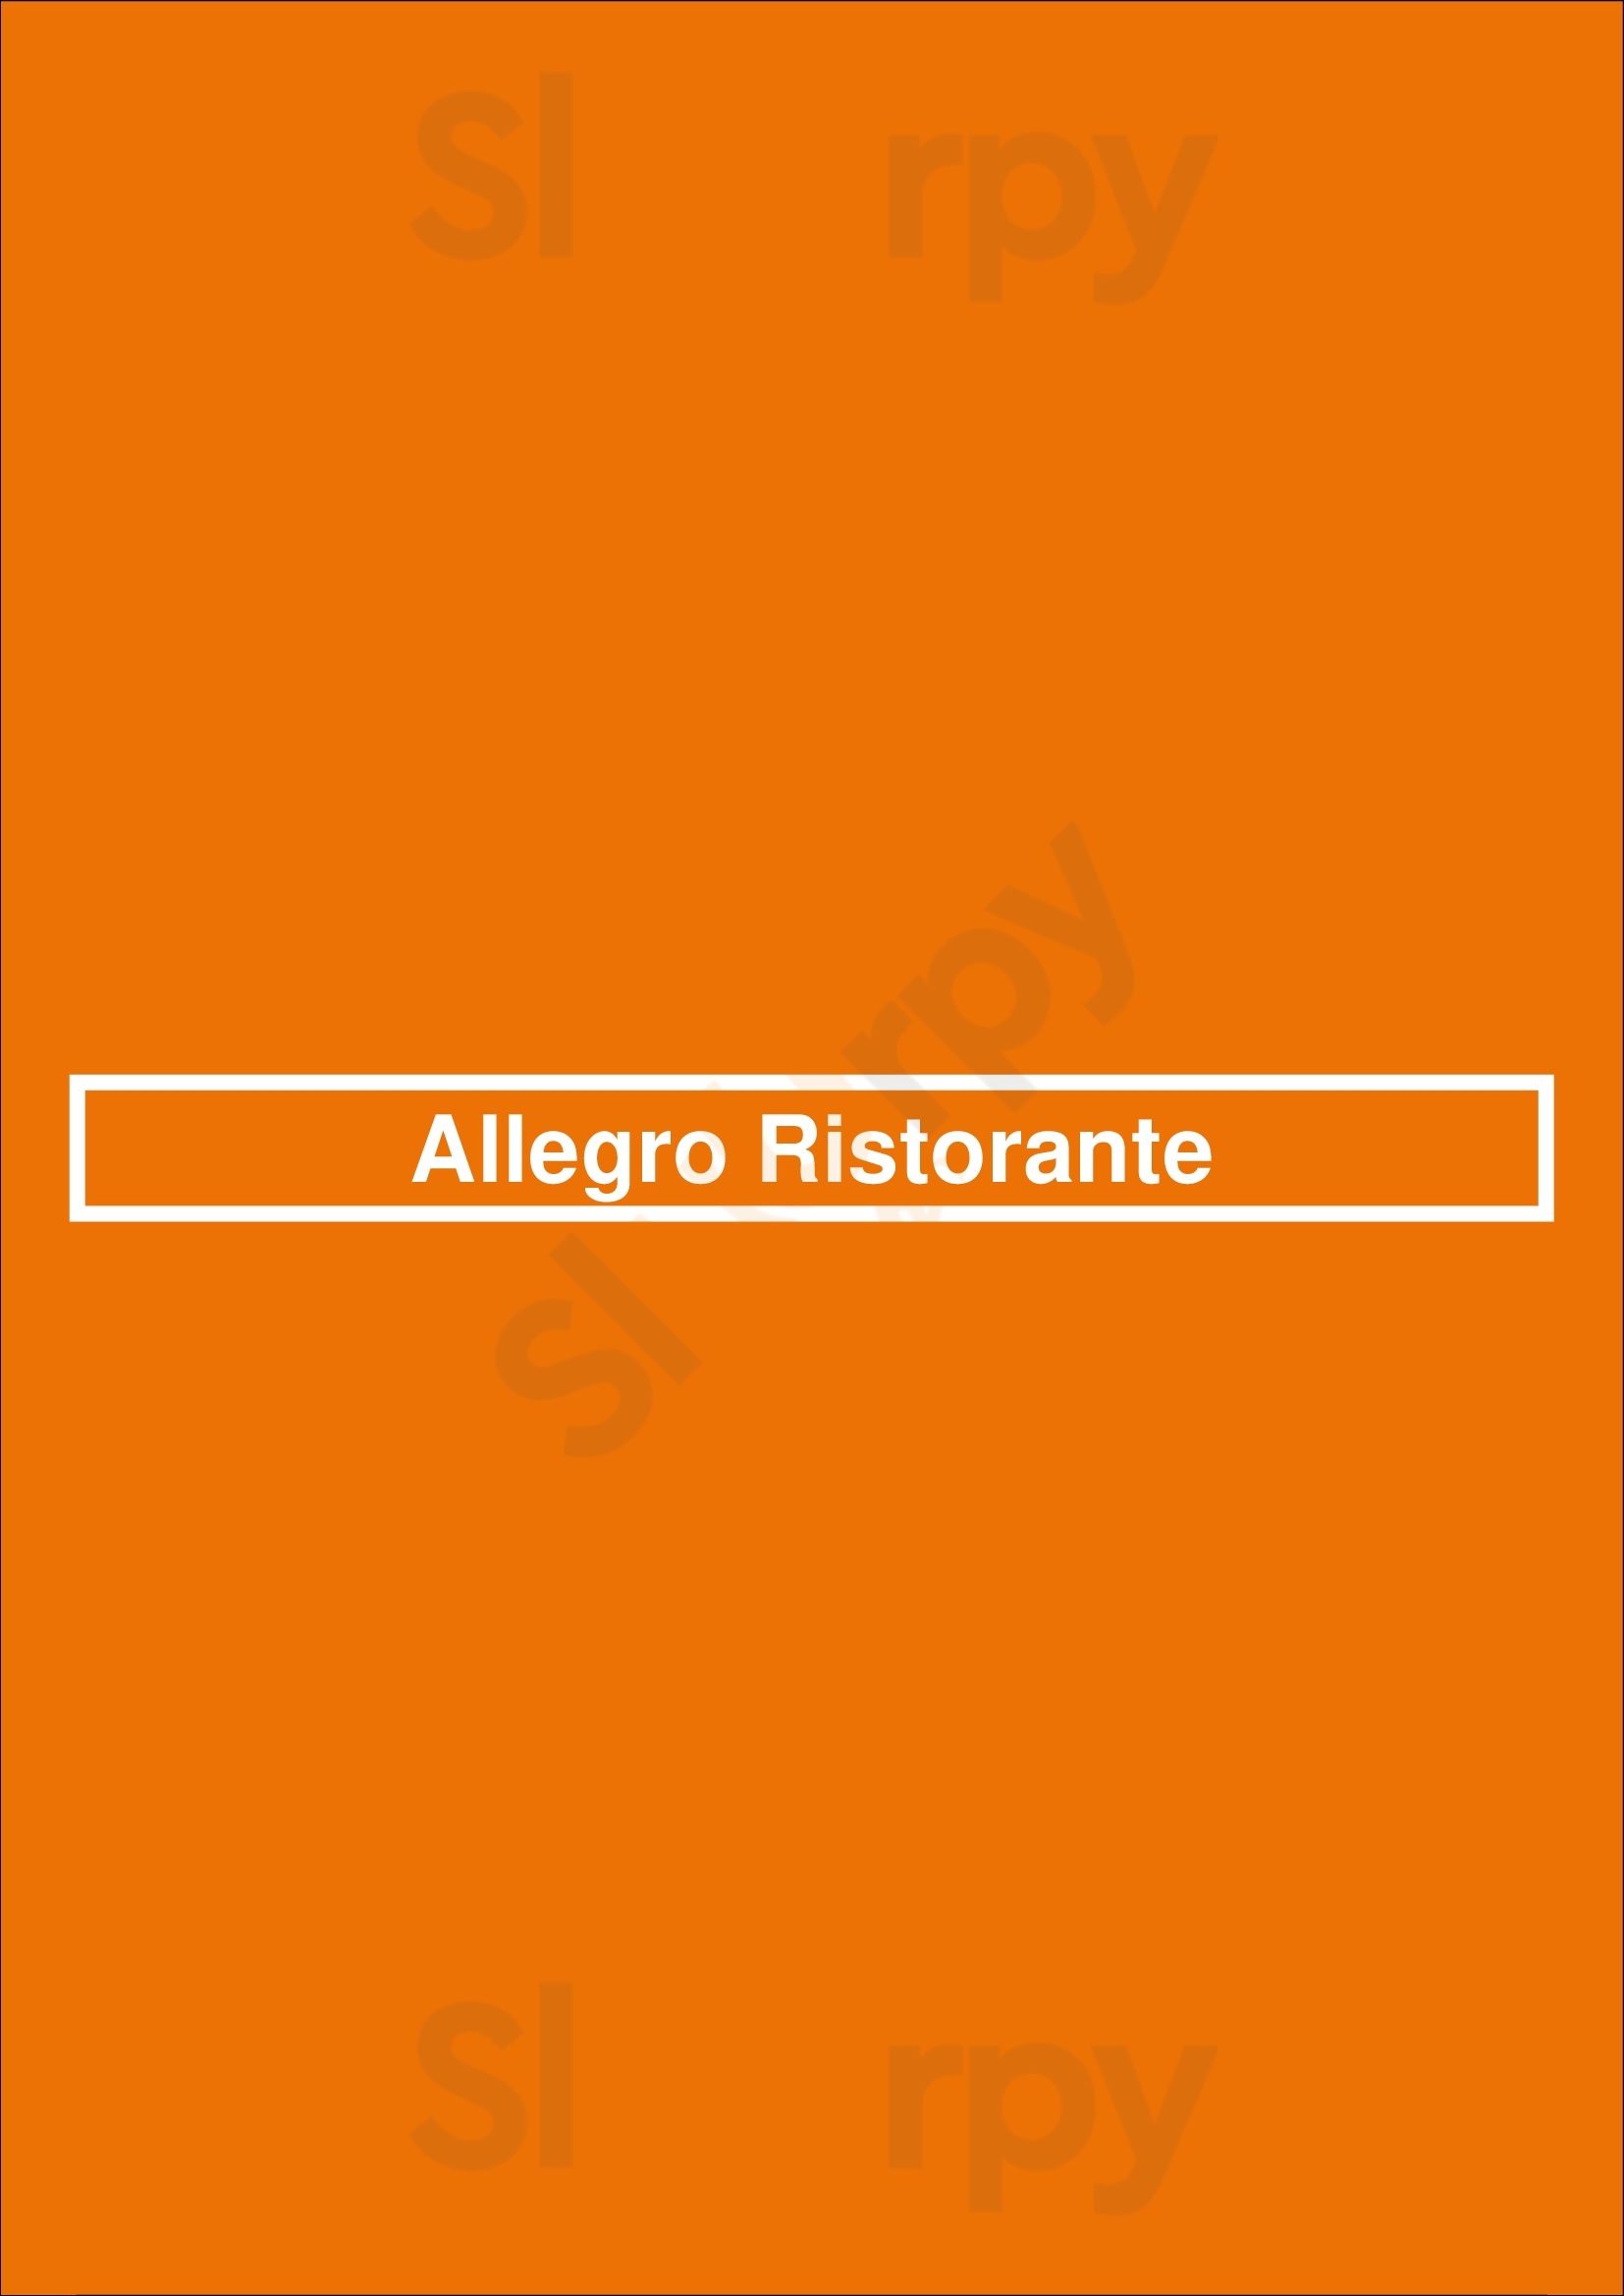 Allegro Ristorante Ottawa Menu - 1